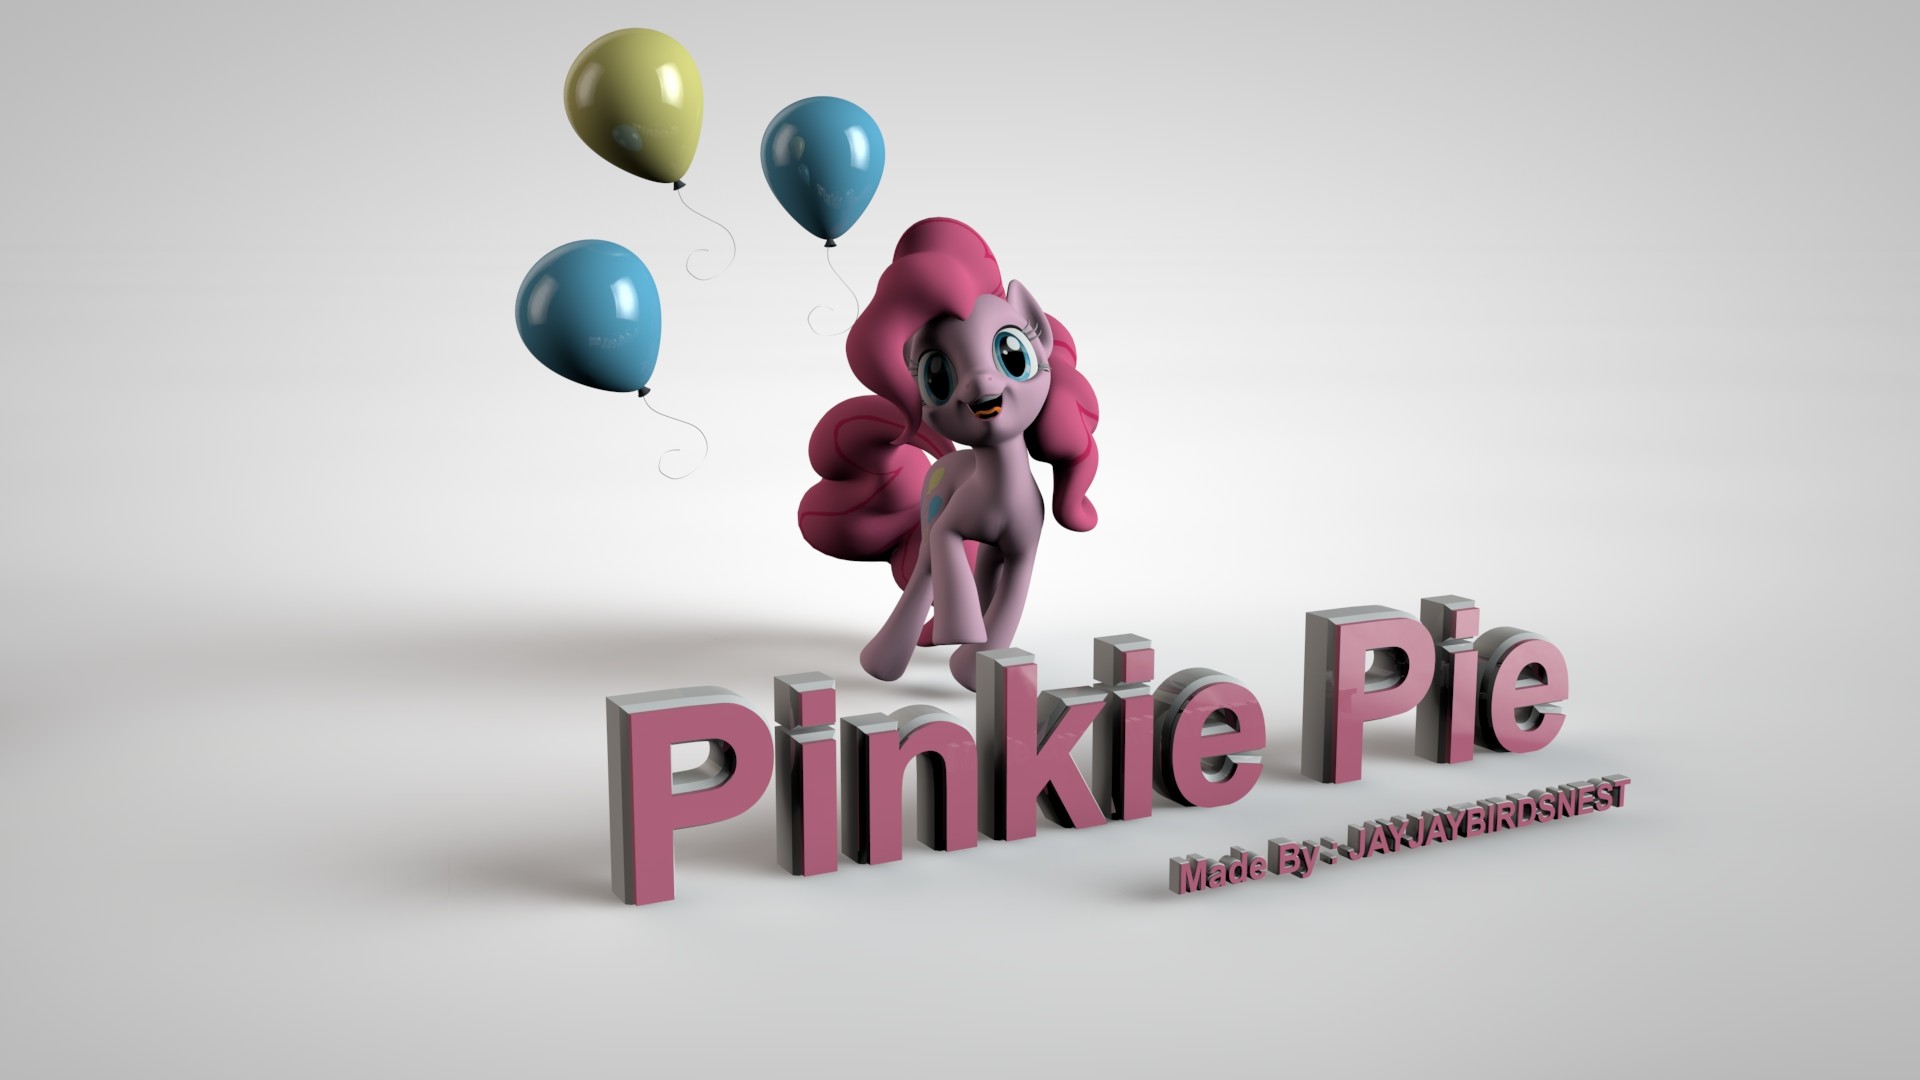 1920x1080 ... 3D My Little Pony FIM Pinkie Pie Wallpaper by jayjaybirdsnest